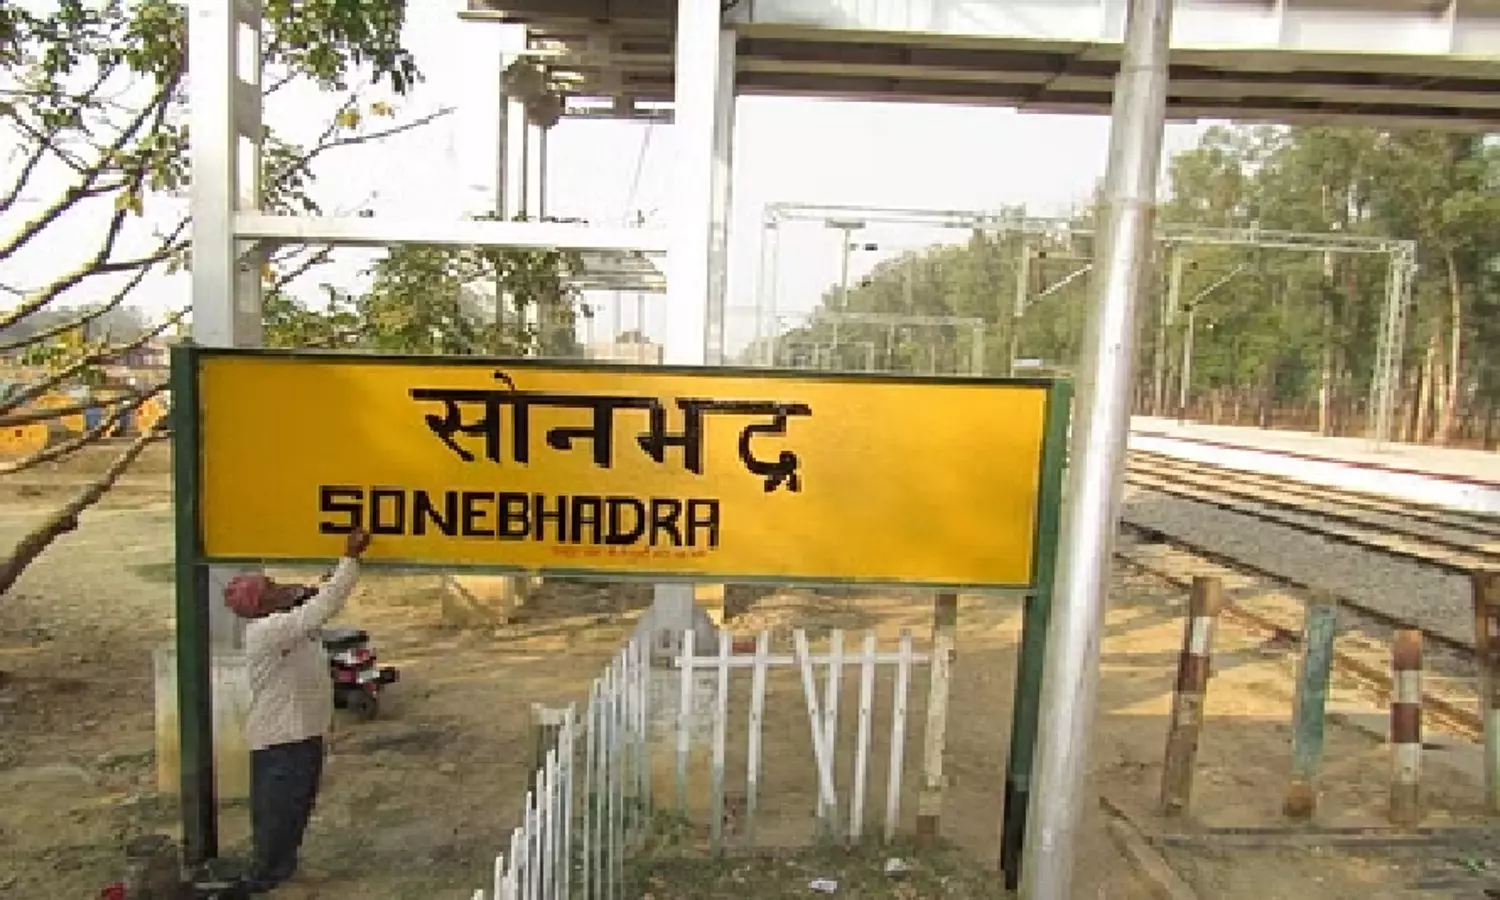 History Of Sonbhadra Station